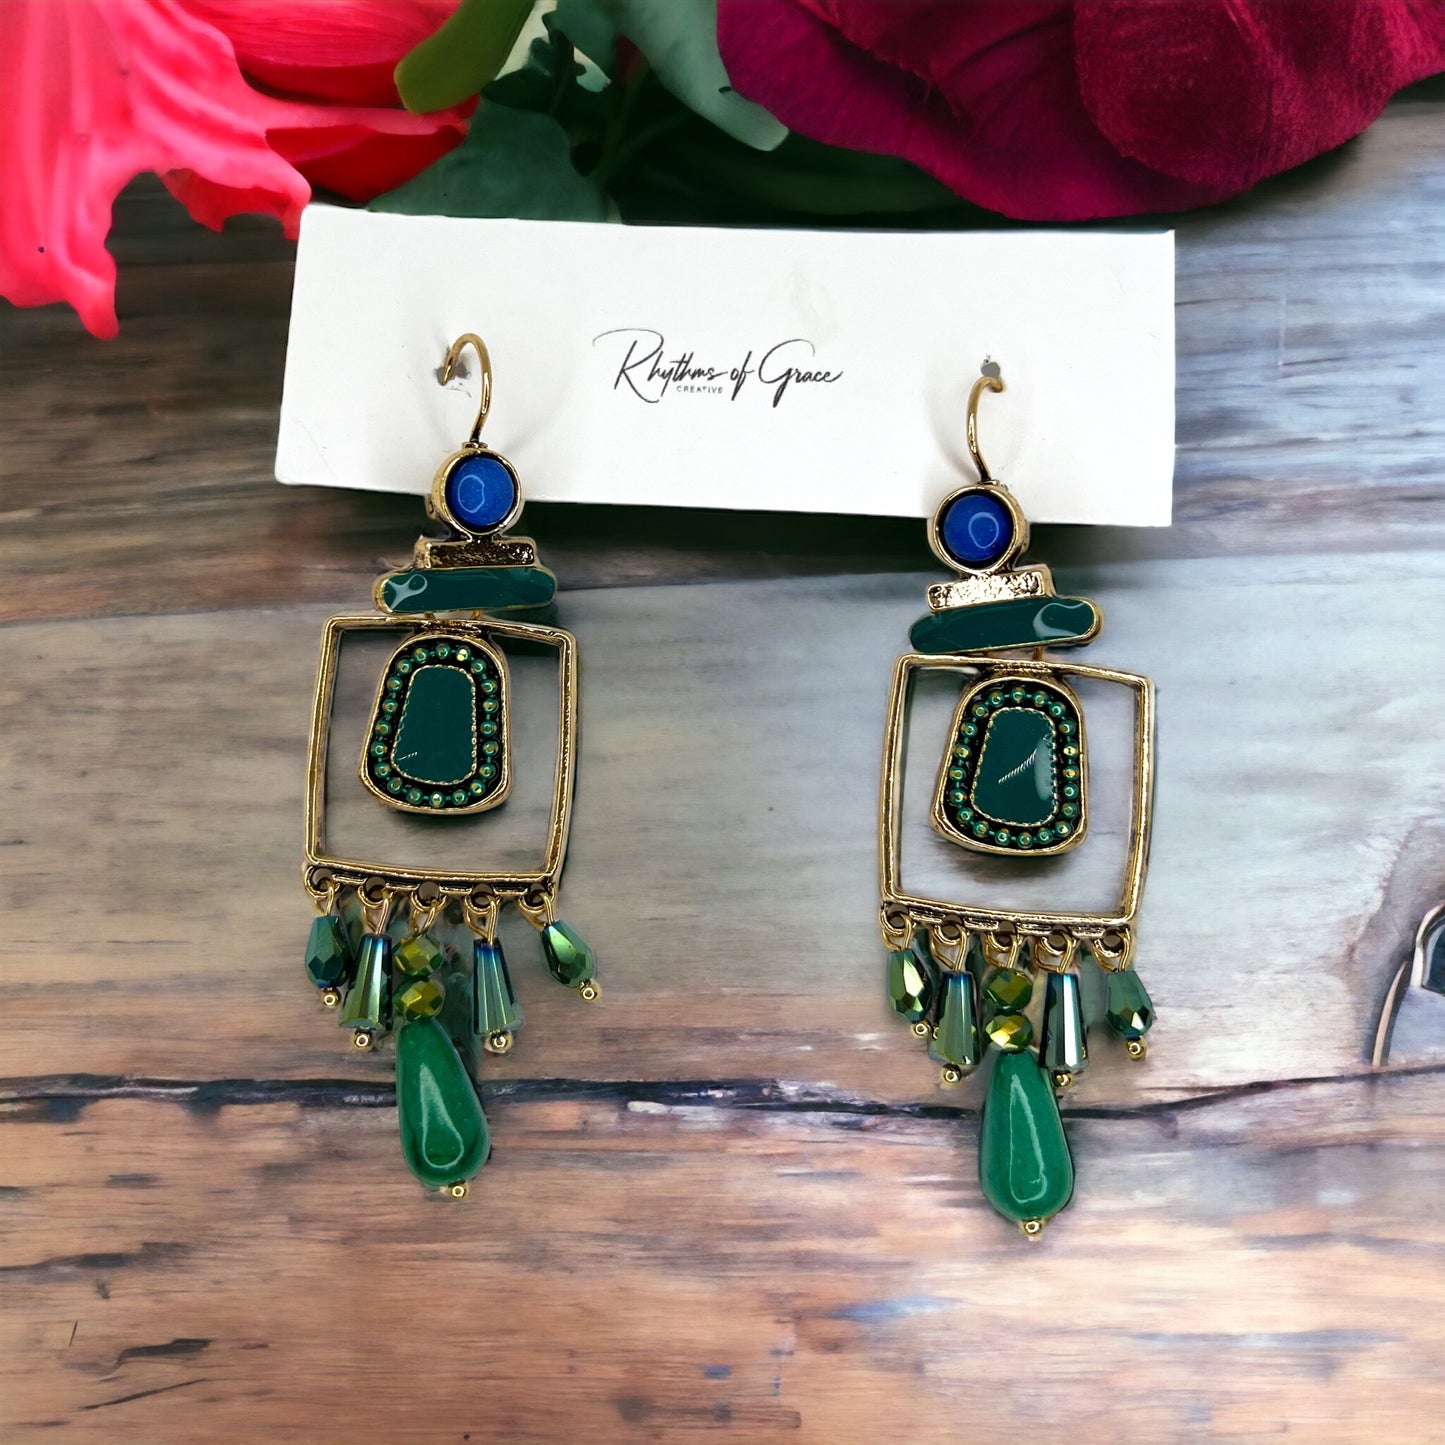 Boho Stone Earrings - Blue Green Stones, Teal and Blue, Boho Earrings